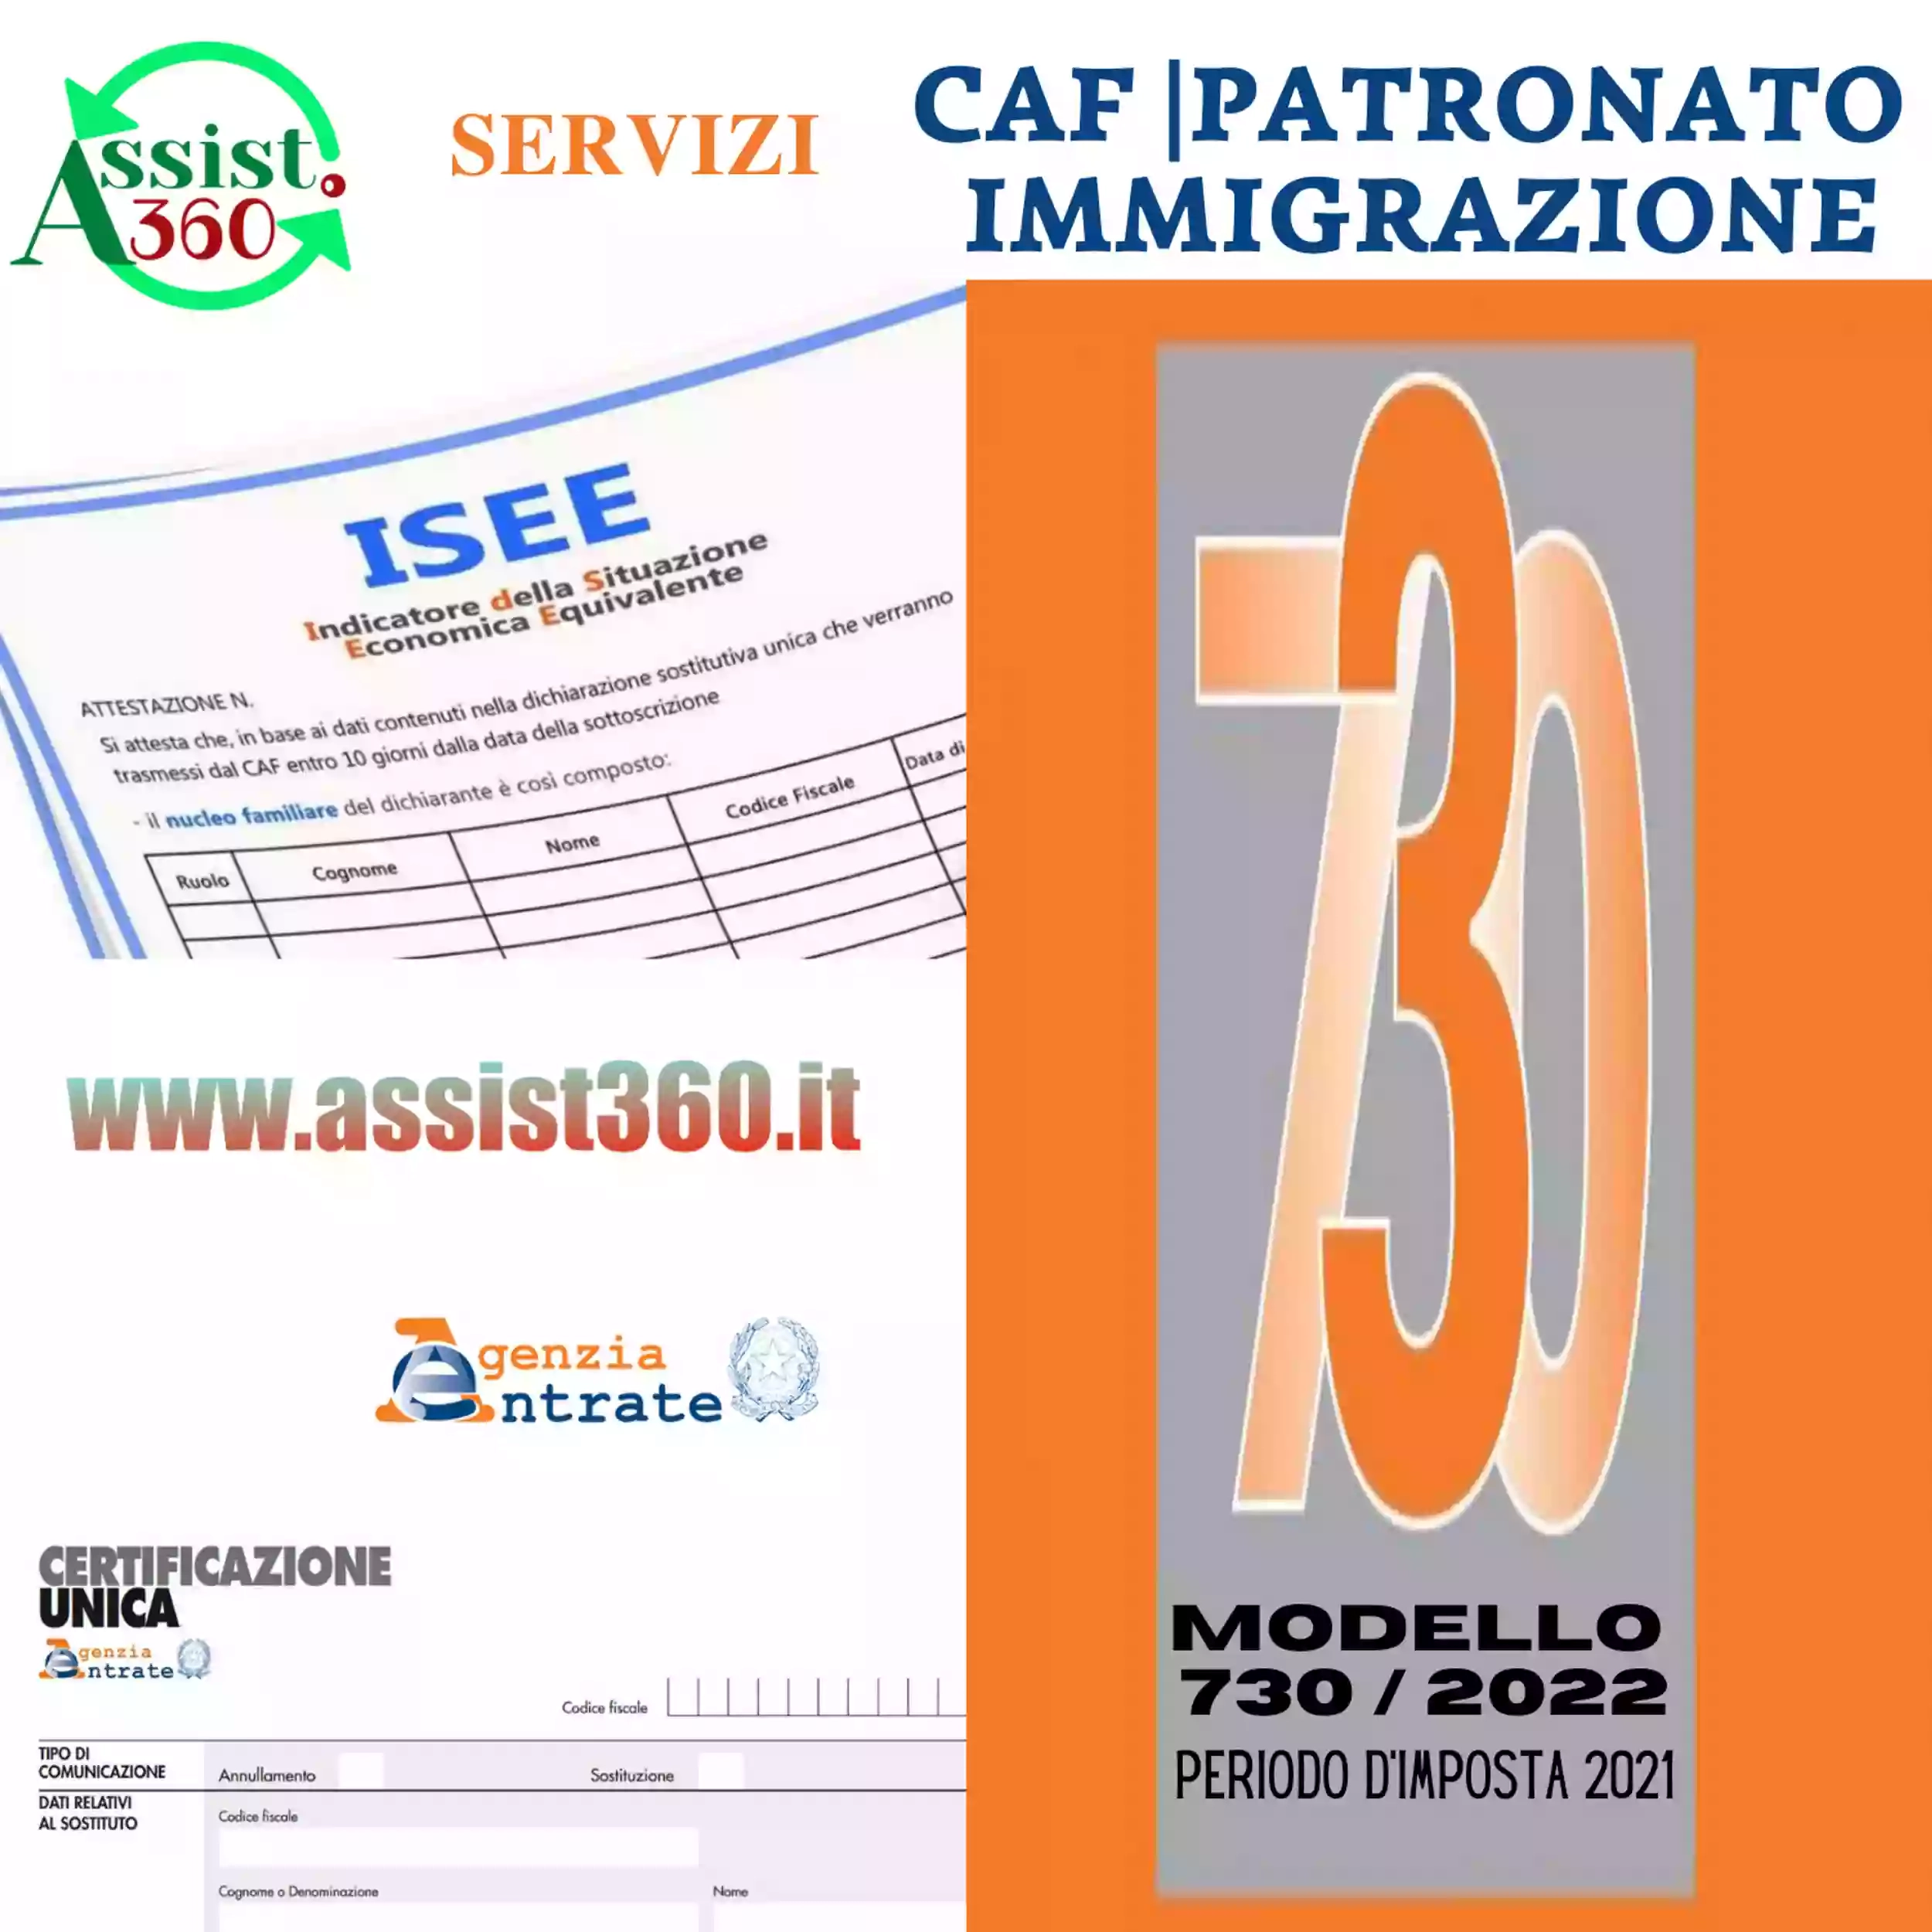 Assist 360 CAF PATRONATO IMMIGRAZIONE